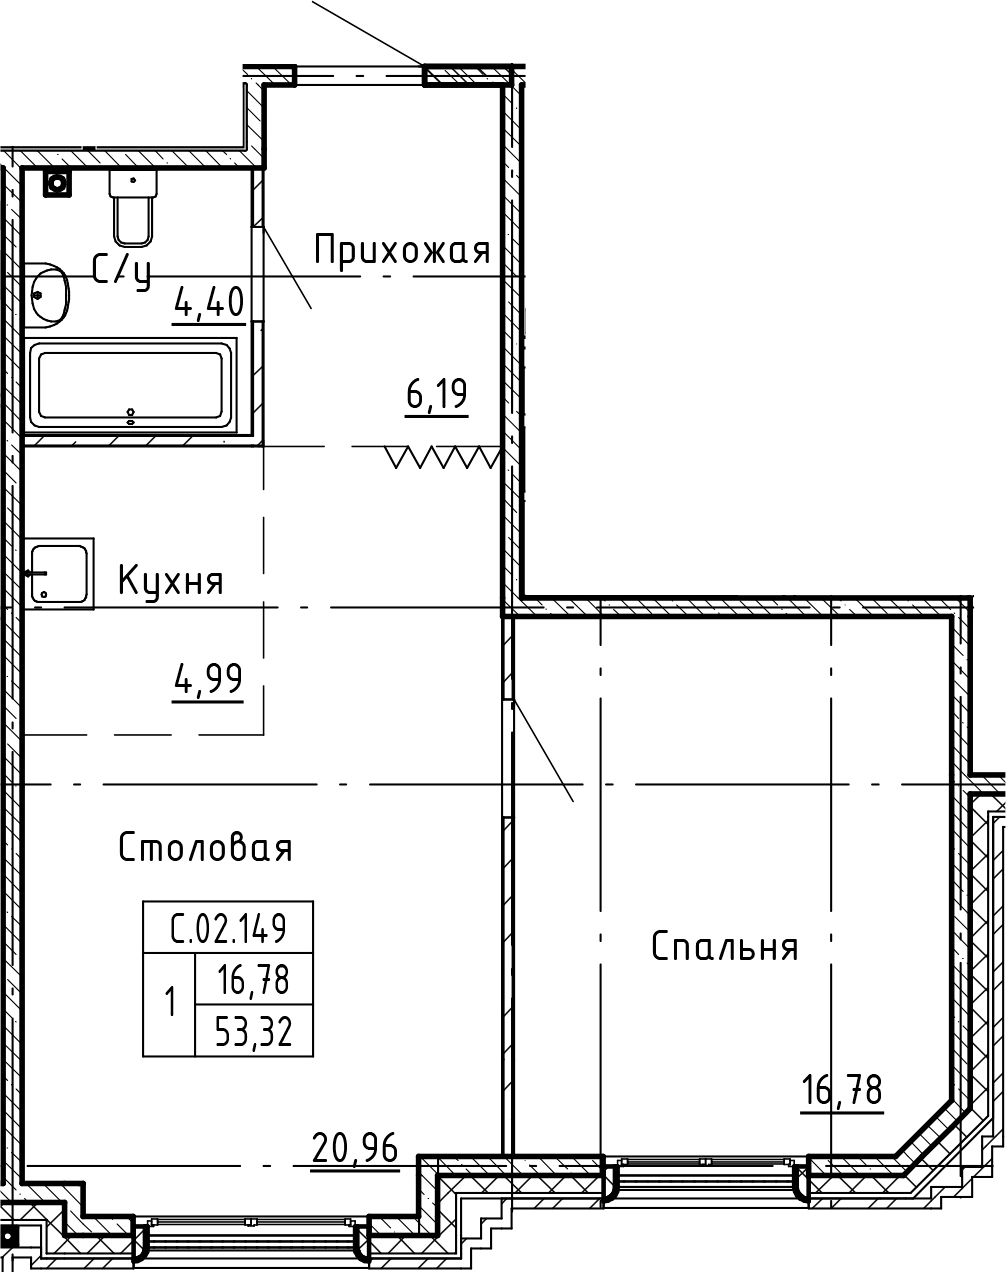 1-комнатная, 53.32 м²– 2